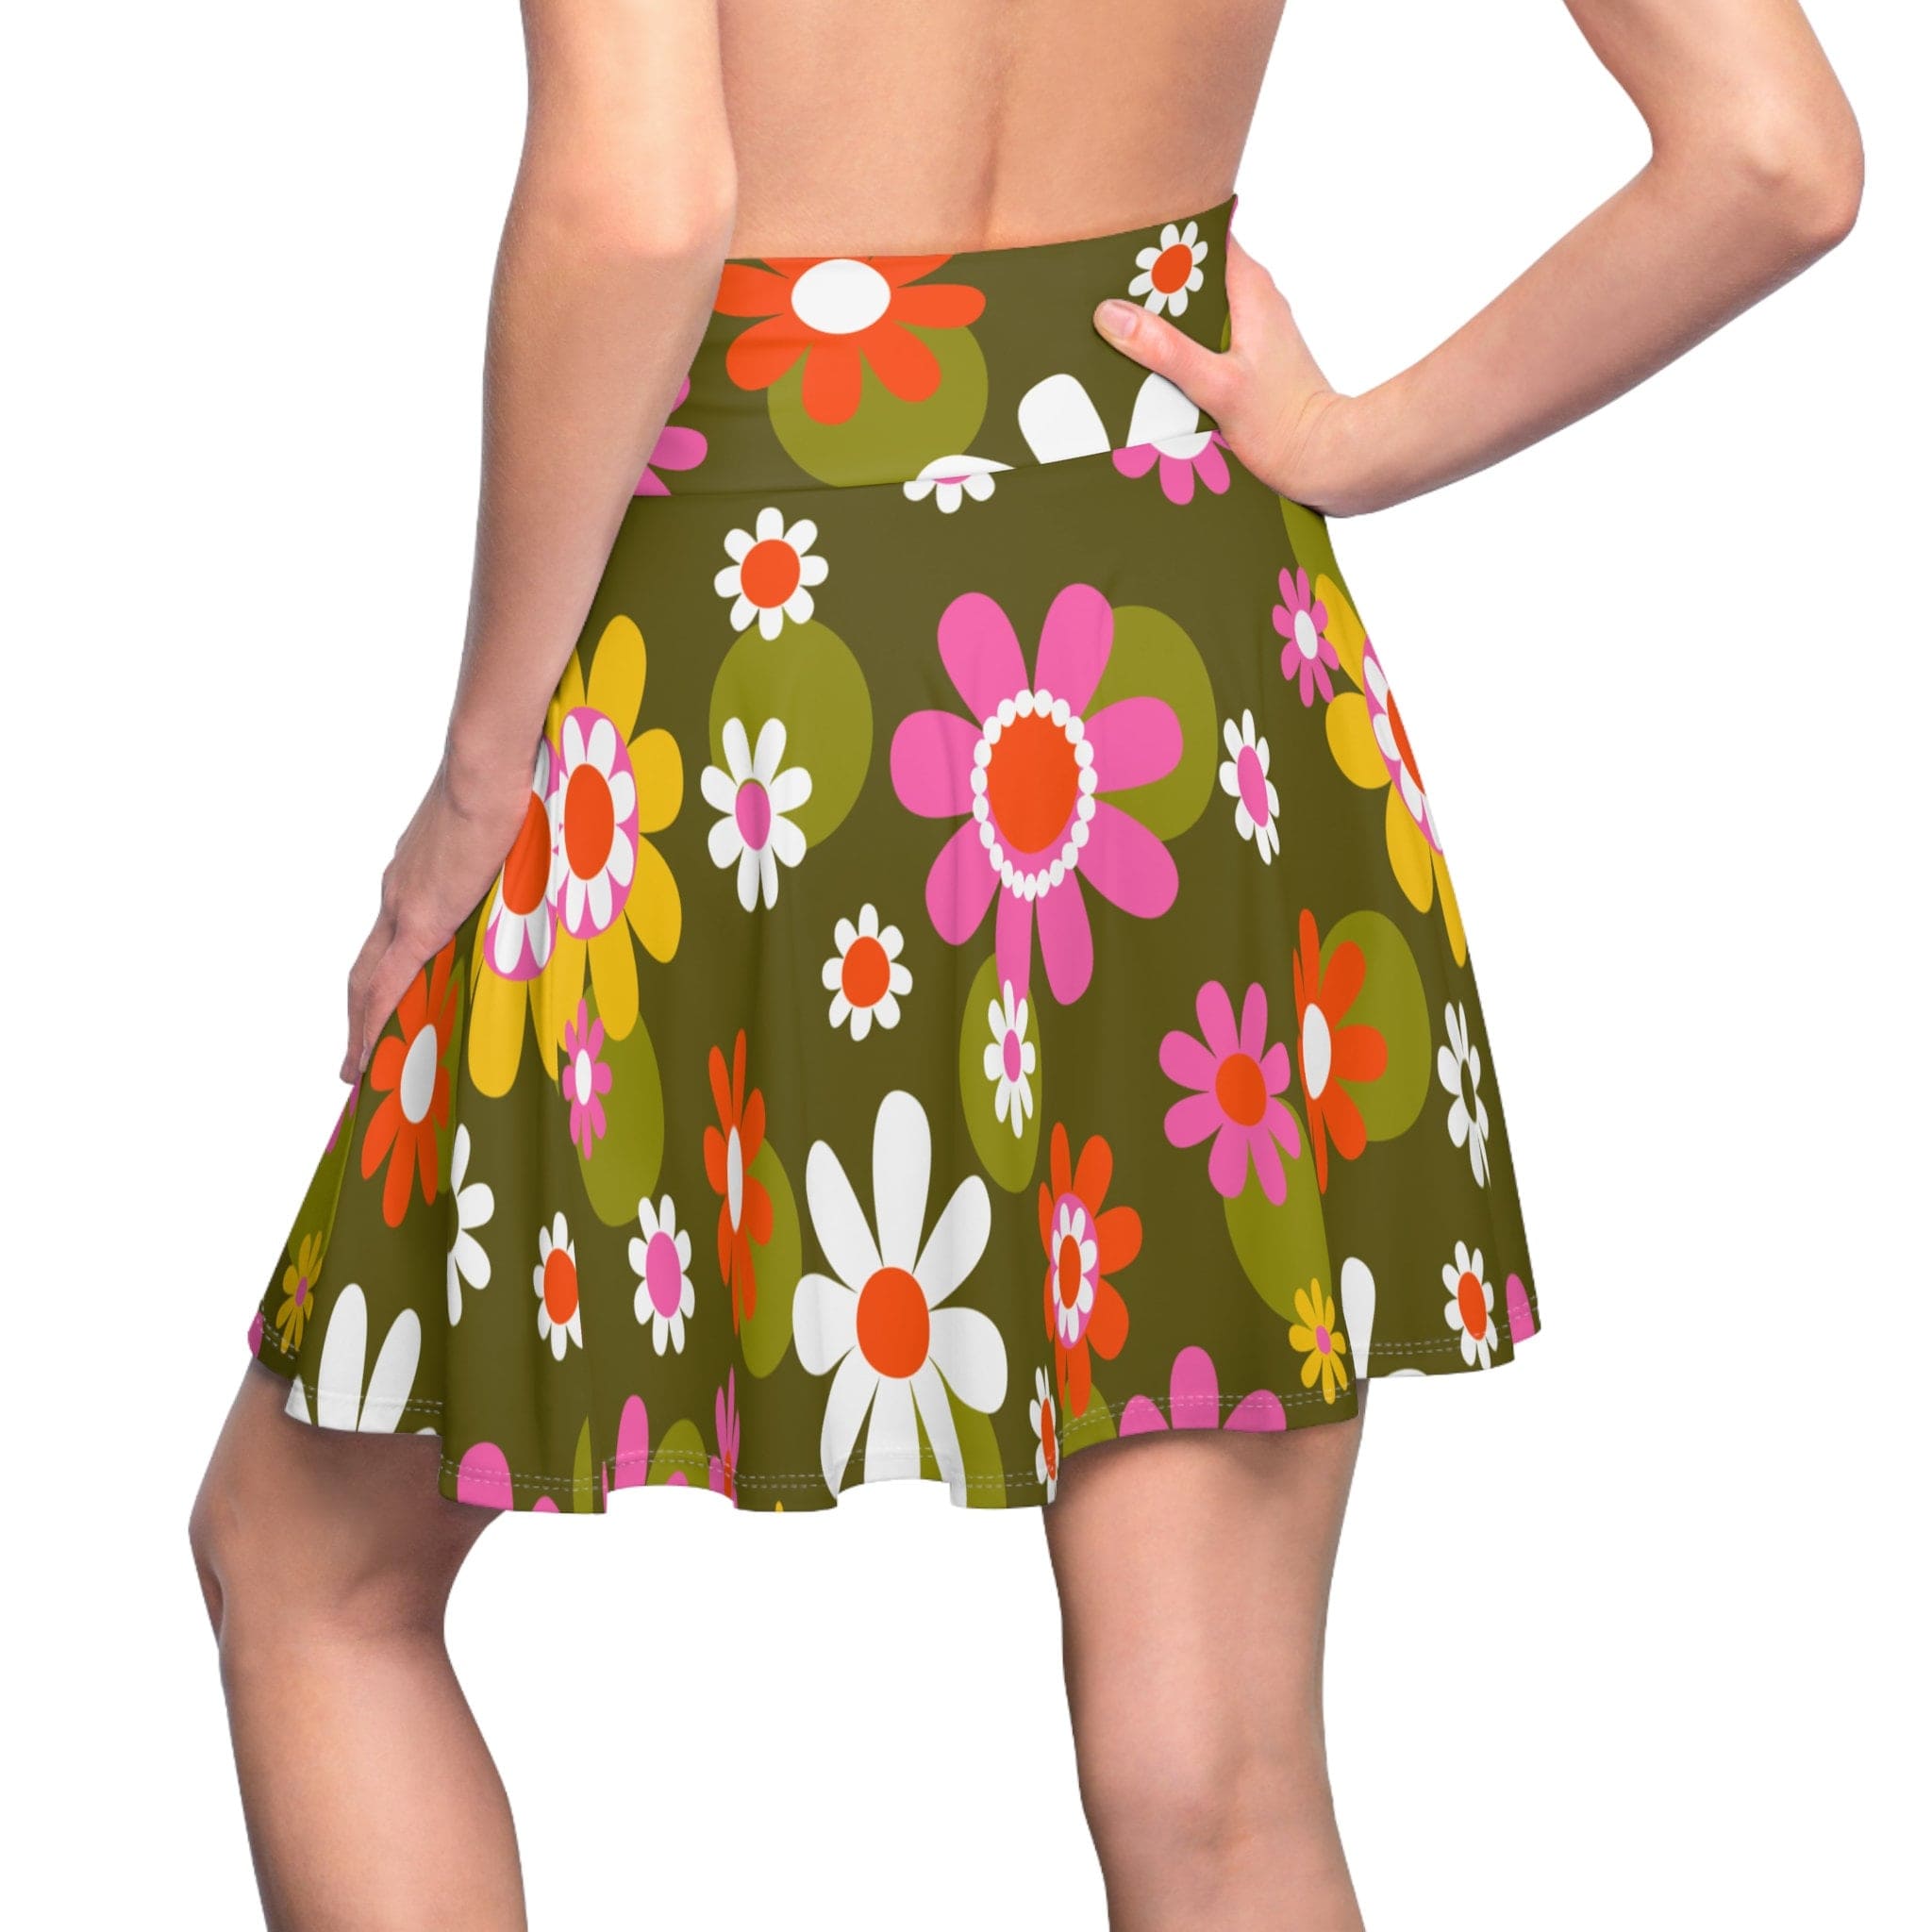 Kate McEnroe New York Groovy Flower Power Hippie Daisies 70s Disco Party Skirt, Retro Pink, Green Mid Century Modern Skater Skirt - 129882223Skirts30934504993767301885